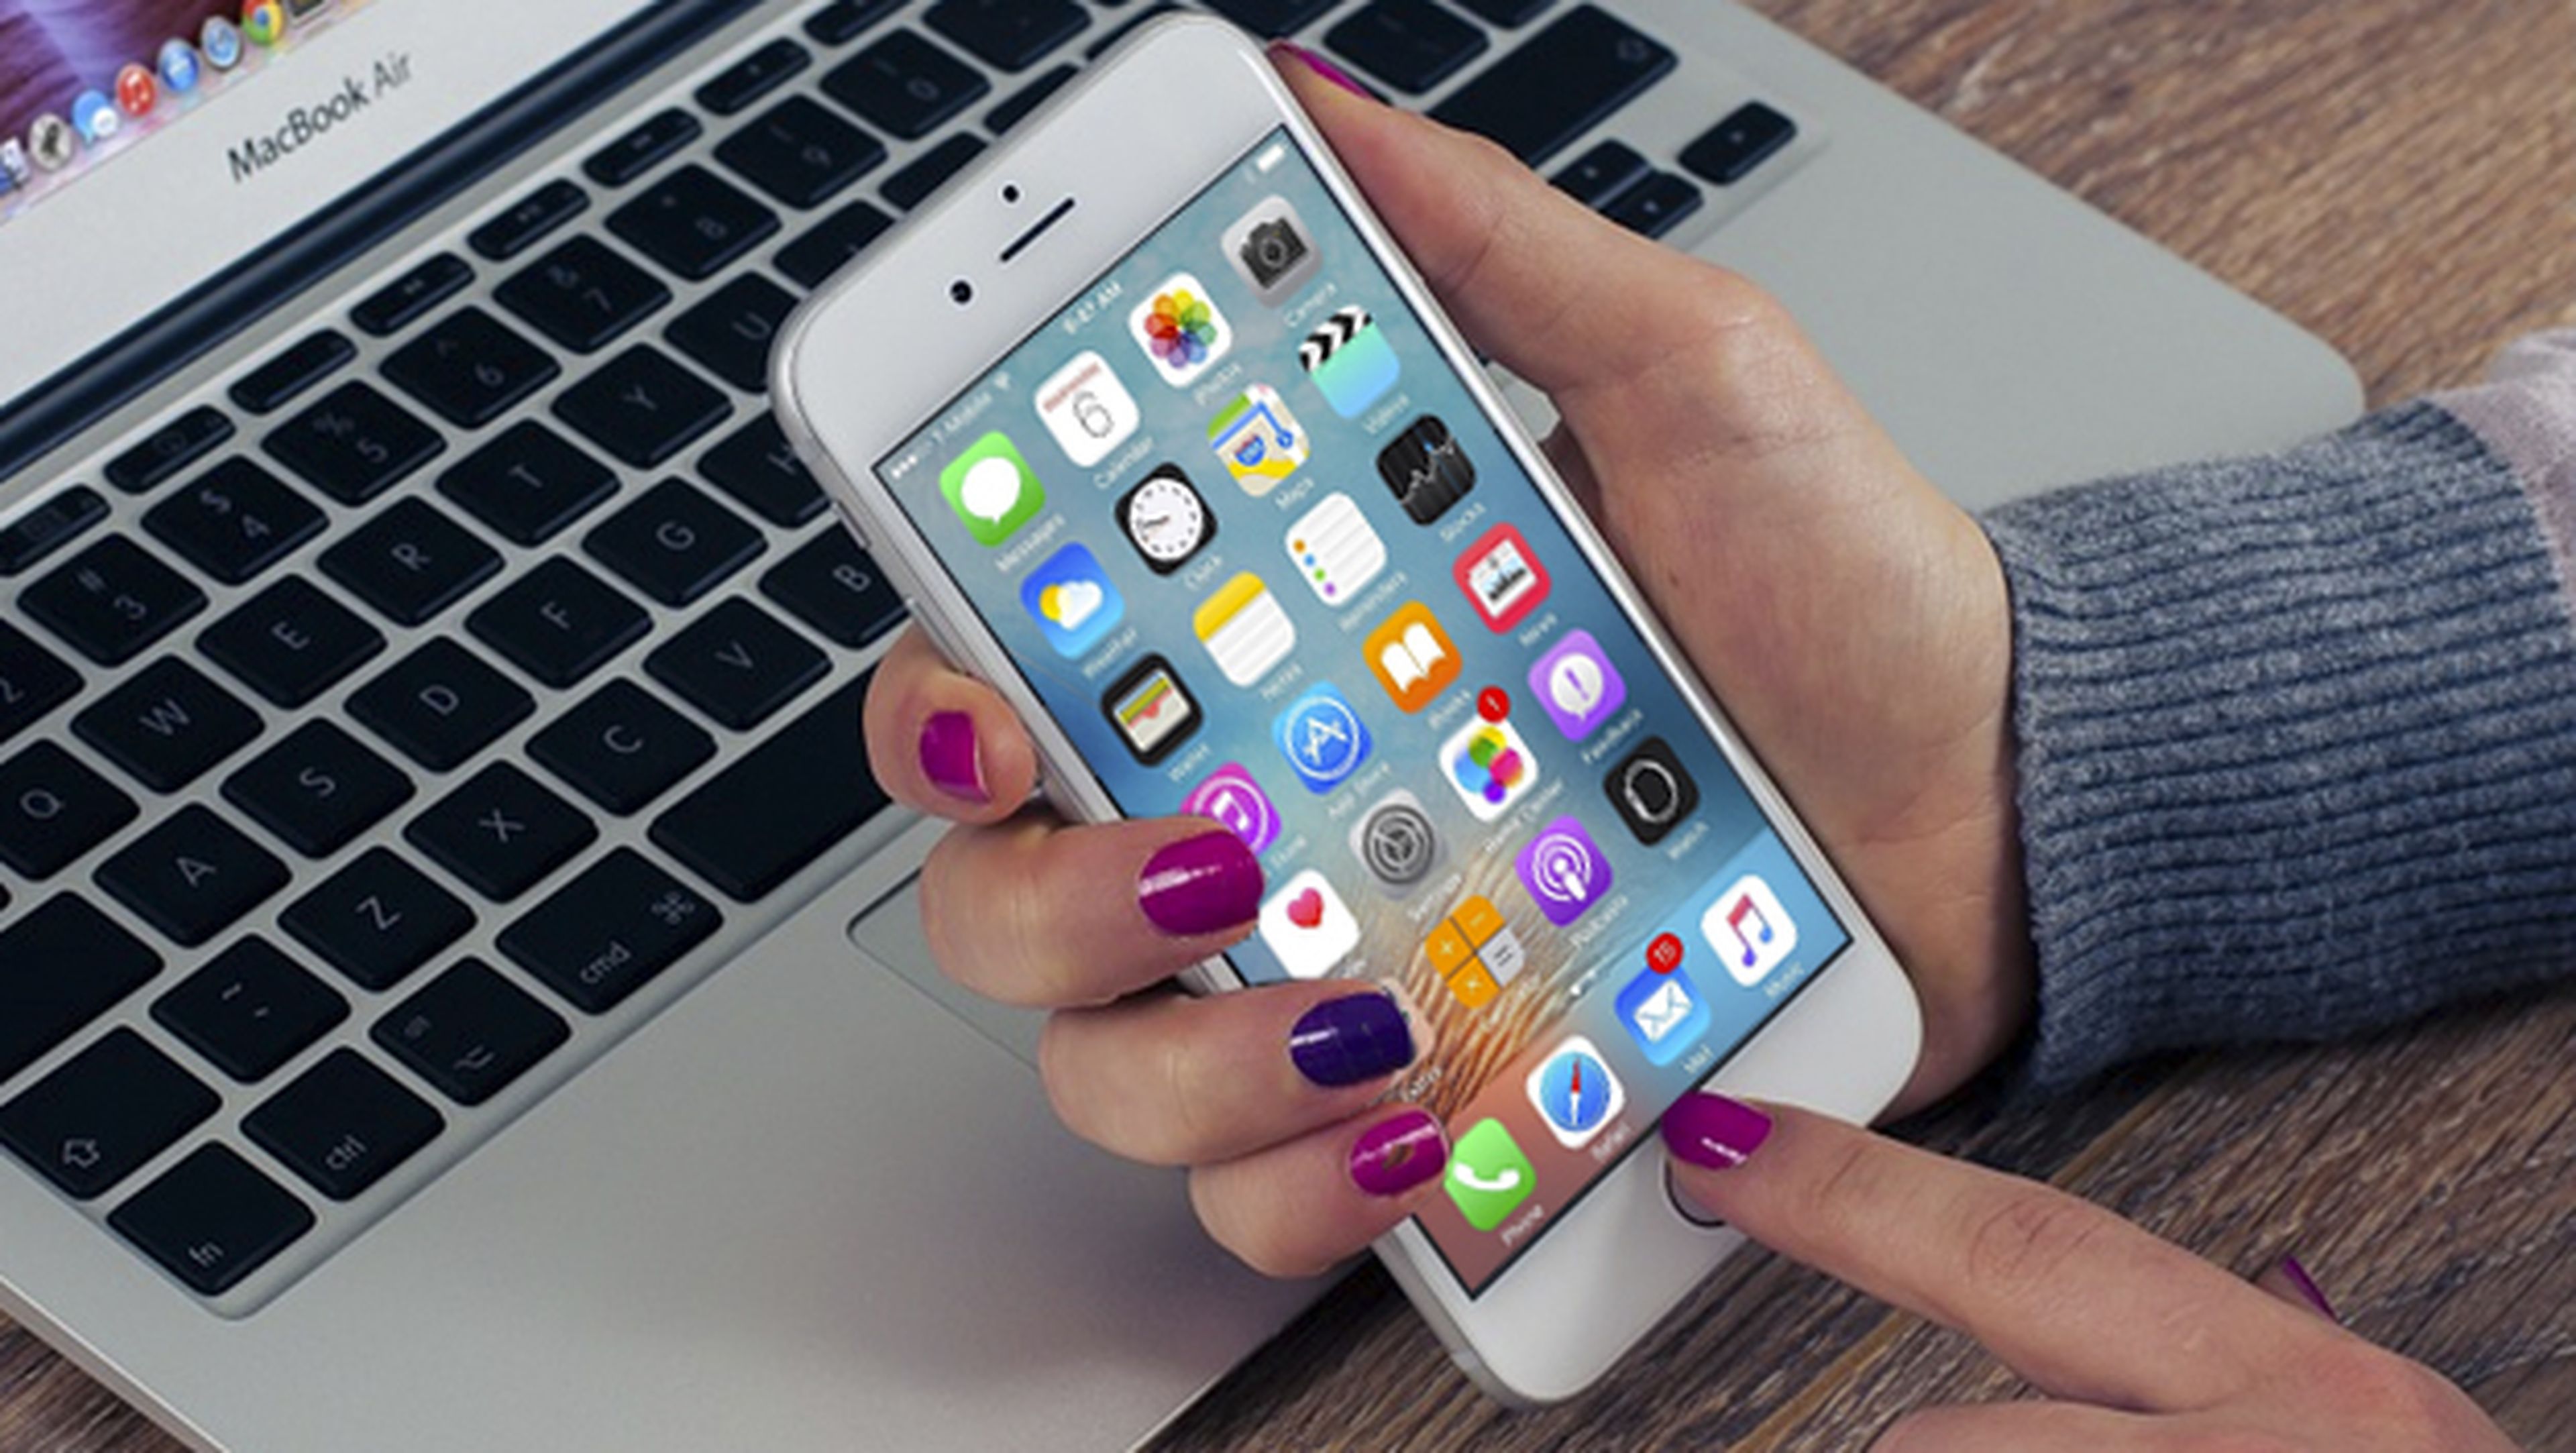 iOS 10: novedades que traerá a servicios y apps del iPhone